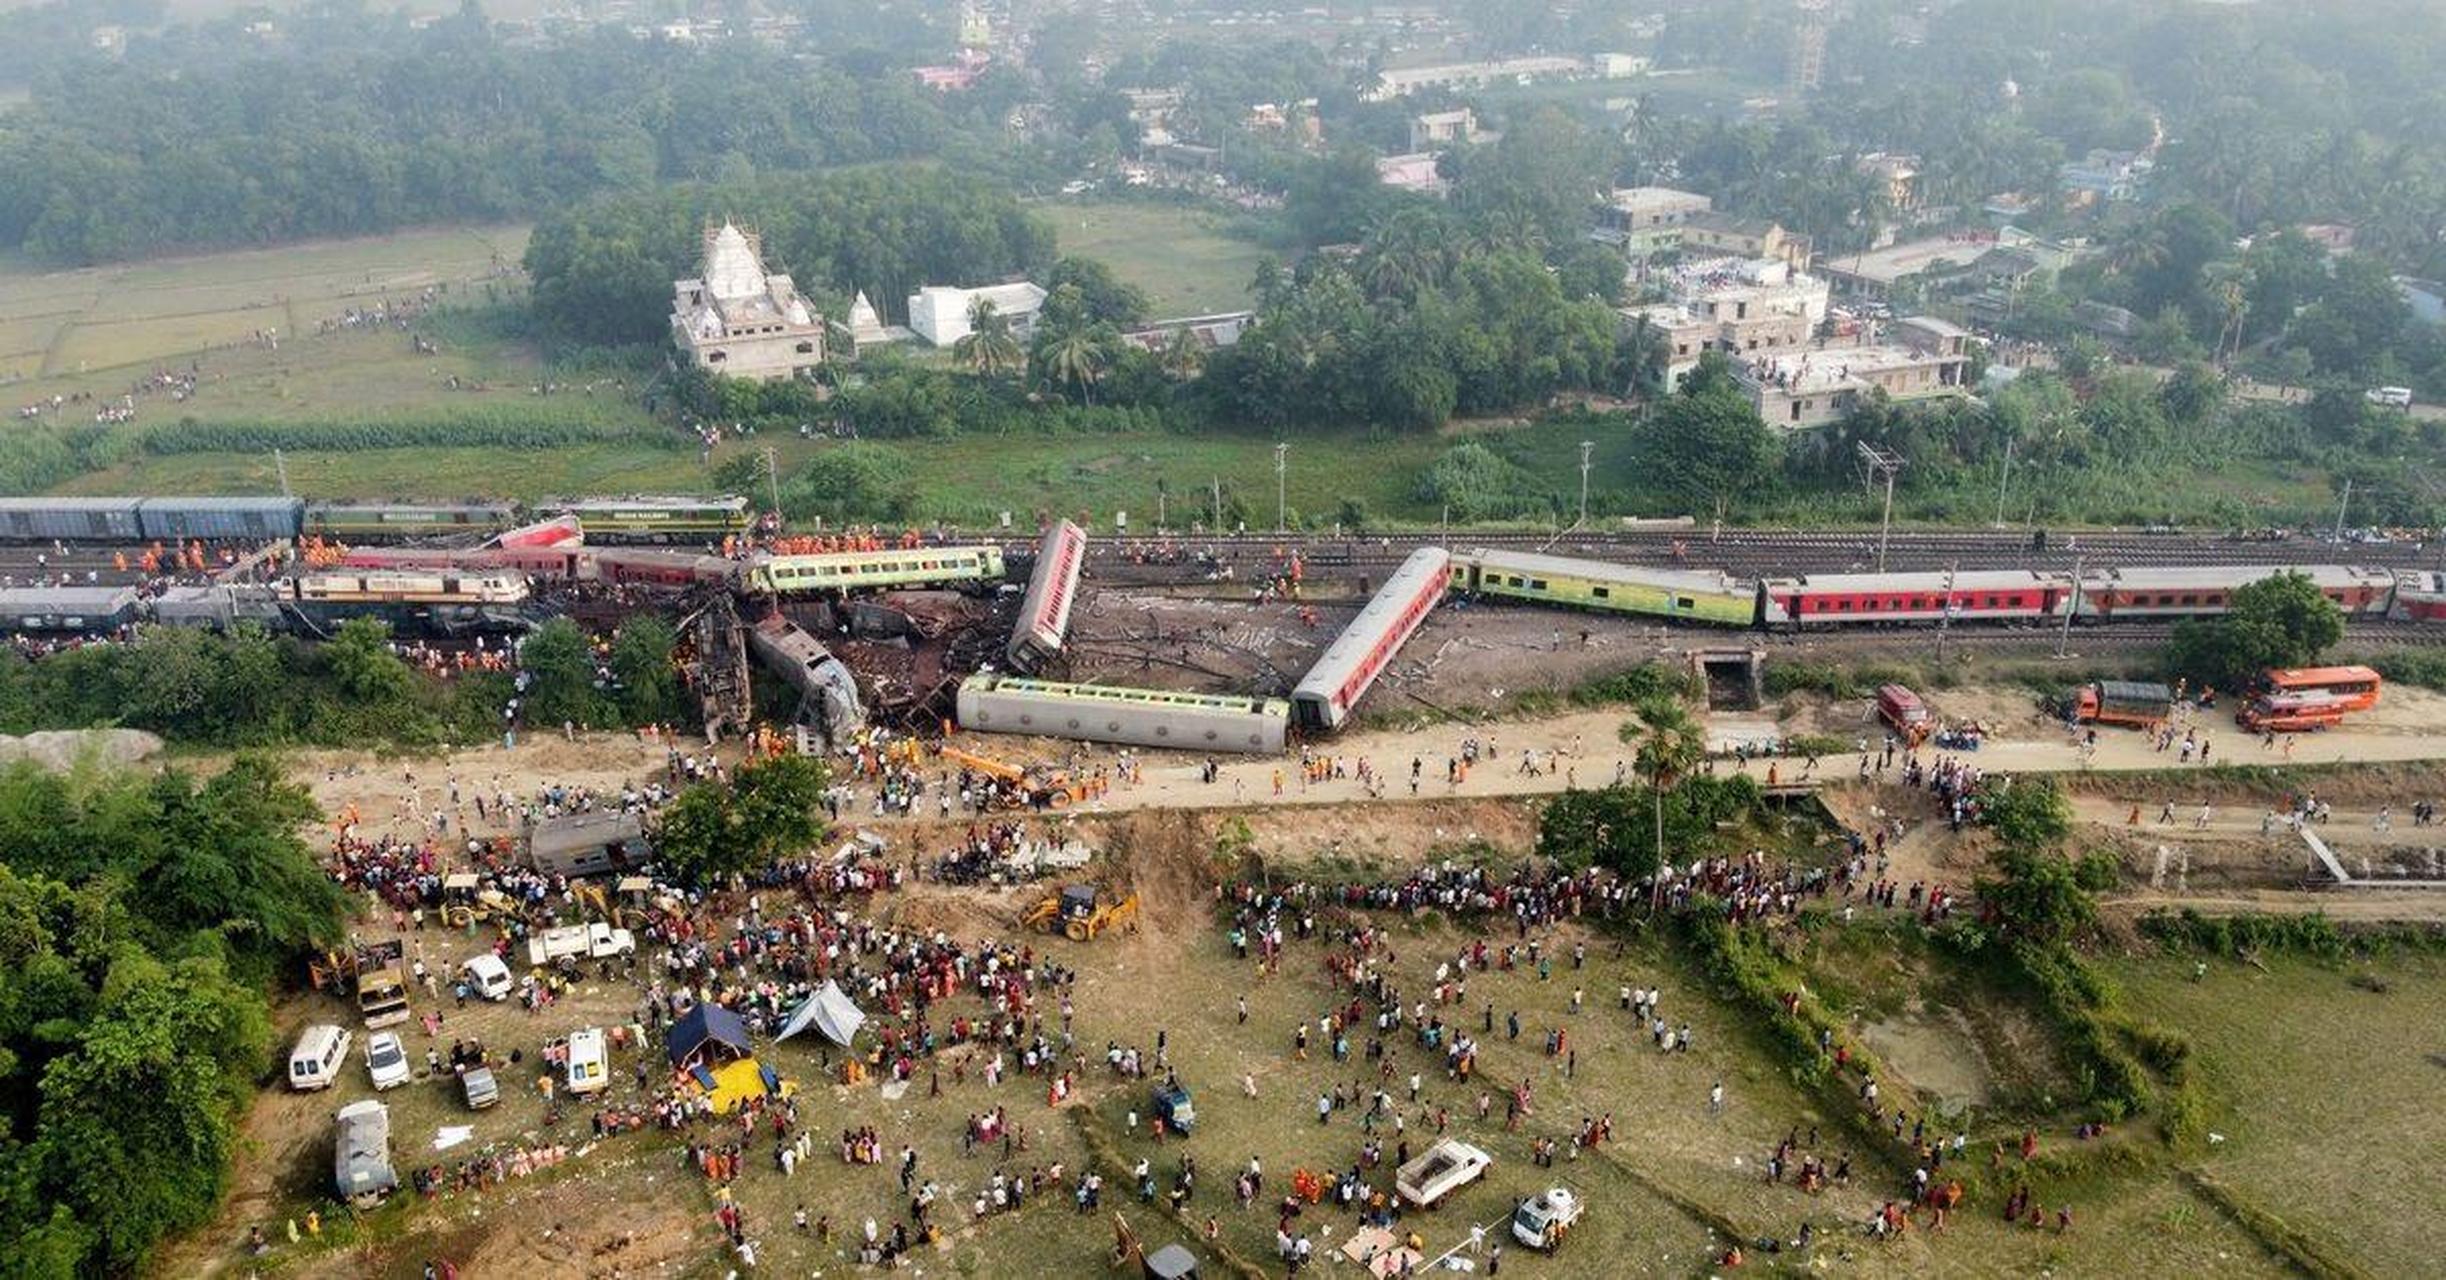 印度火车出轨事故,最少261人死亡,近20年来印度最严重火车事故!